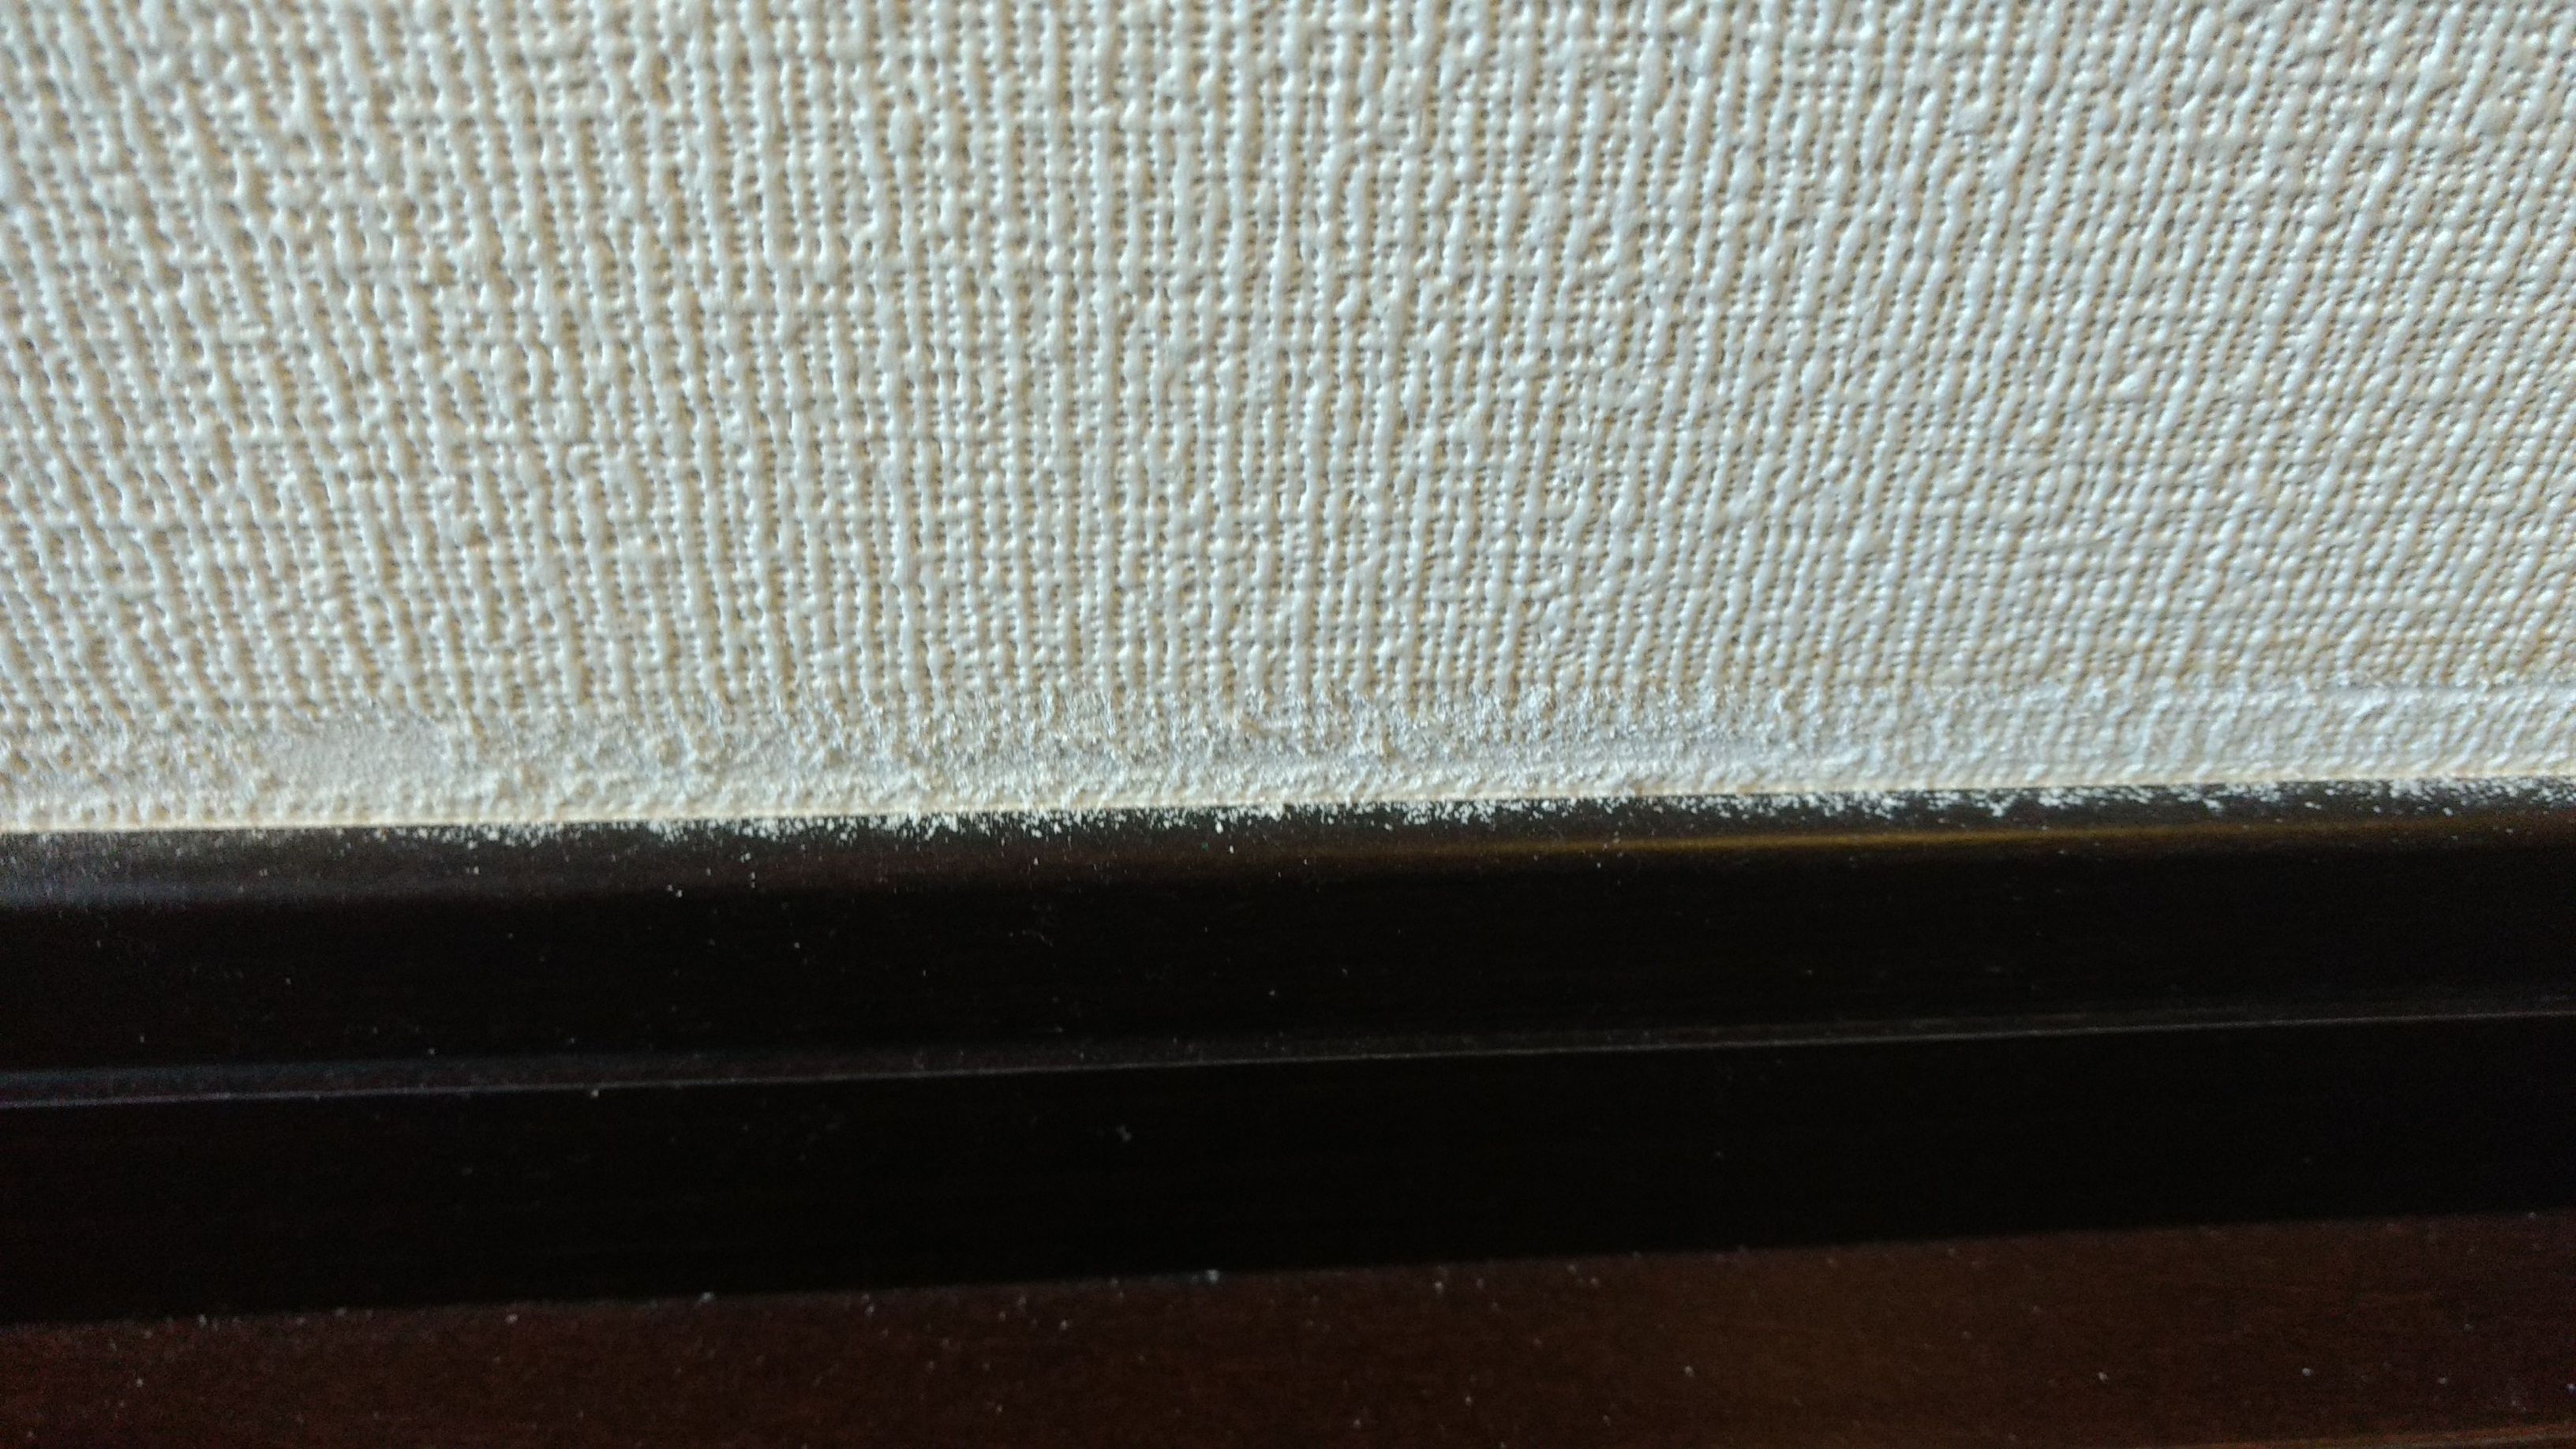 壁紙がボロボロになる問題に悩まされていた ゆりリスの大日本印刷 サンゲツ の壁紙 Ebクロス 不良品リコール問題提起ブログ 楽天ブログ